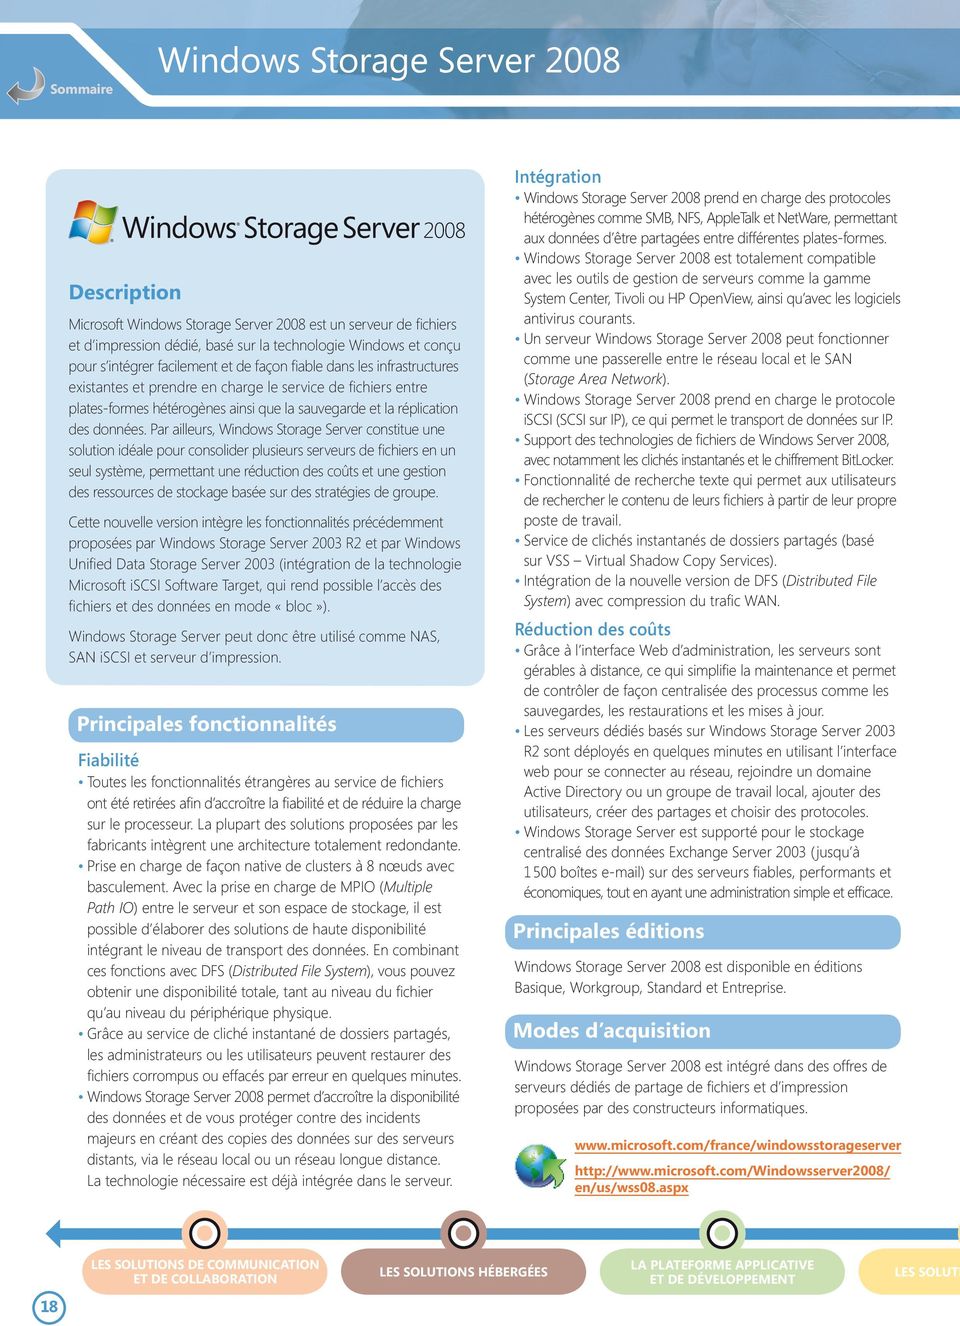 Par ailleurs, Windows Storage Server constitue une solution idéale pour consolider plusieurs serveurs de fichiers en un seul système, permettant une réduction des coûts et une gestion des ressources